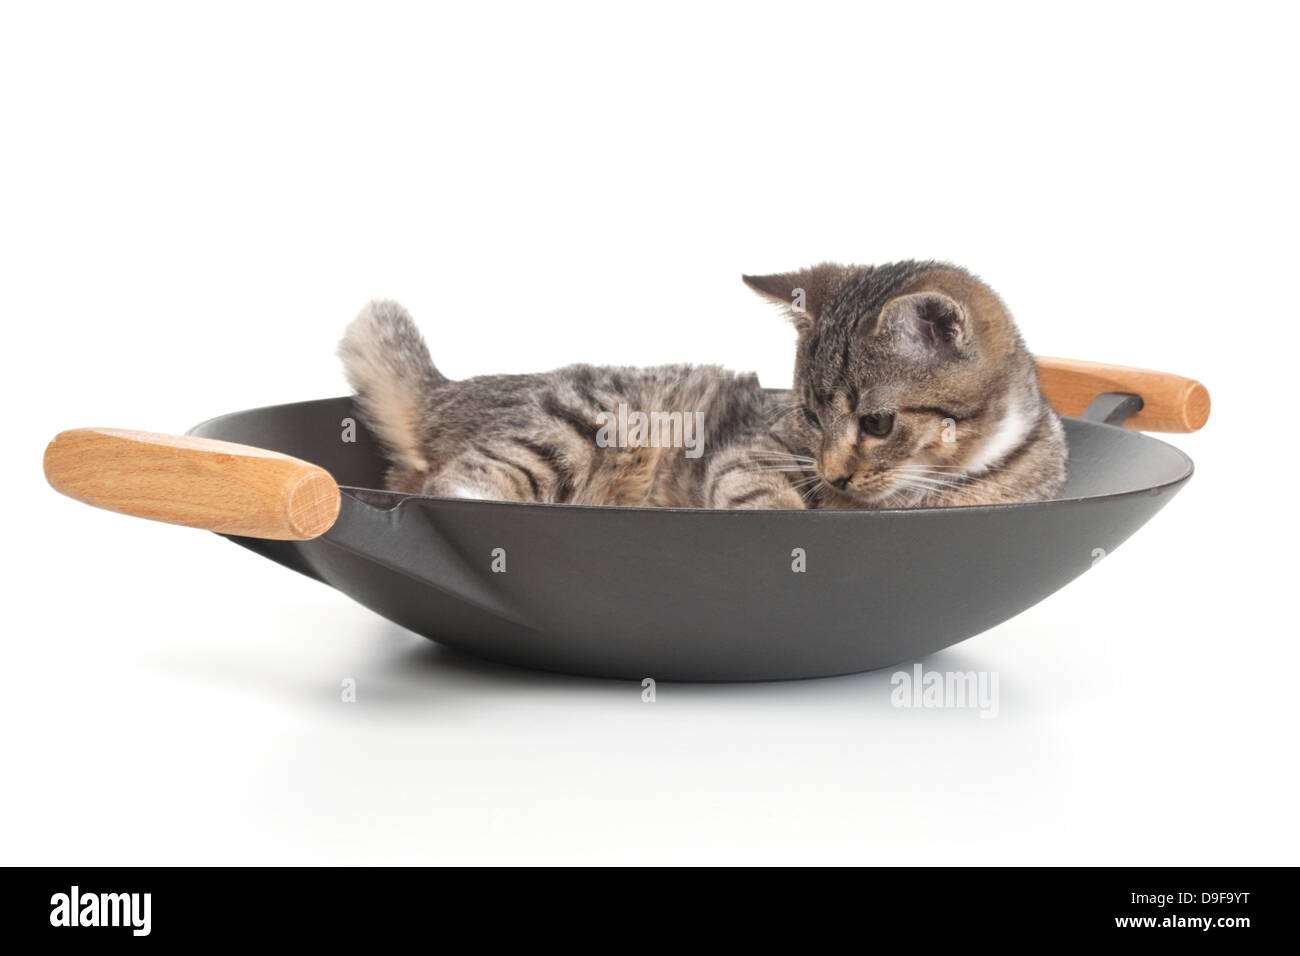 Junge Katze in einem Wok, Spachtelmassen im wok Stockfoto